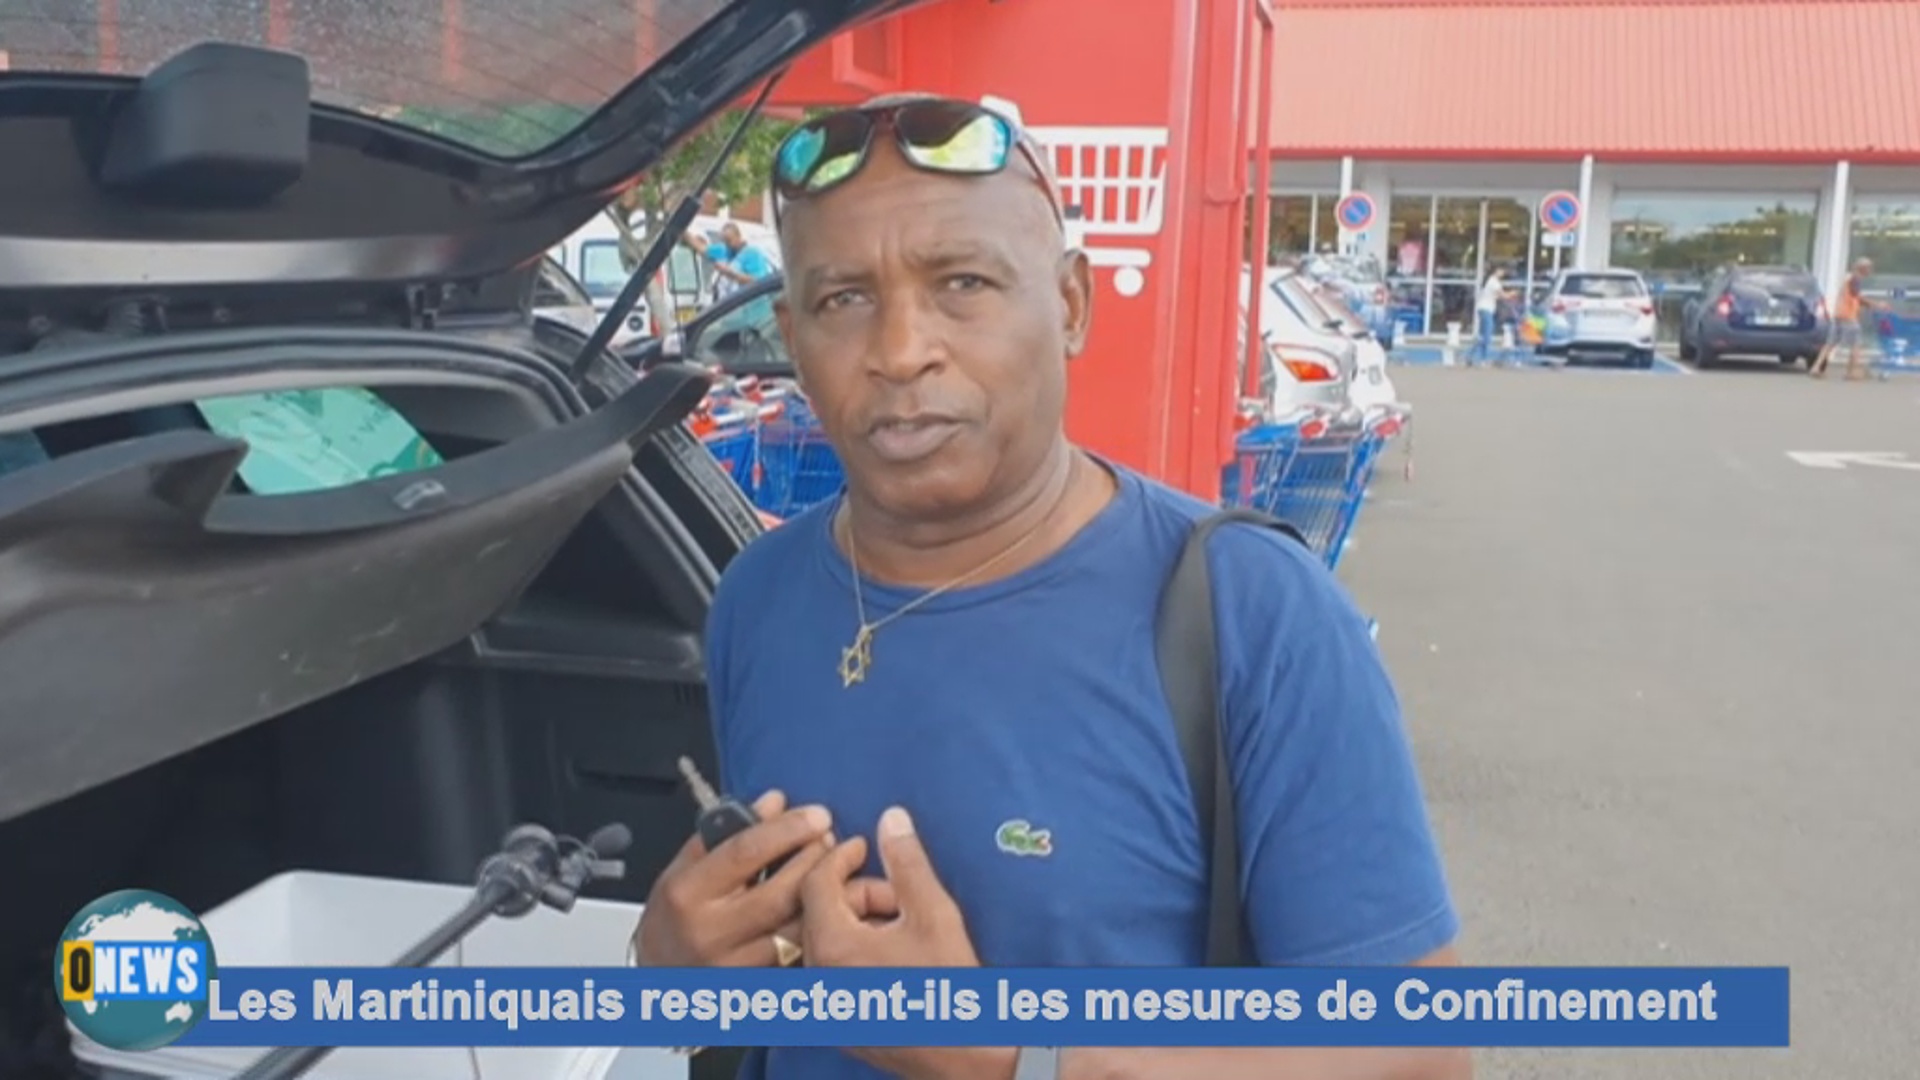 [Vidéo]Covid-19 Onews. Les Martiniquais respectent ils les mesures de confinement?